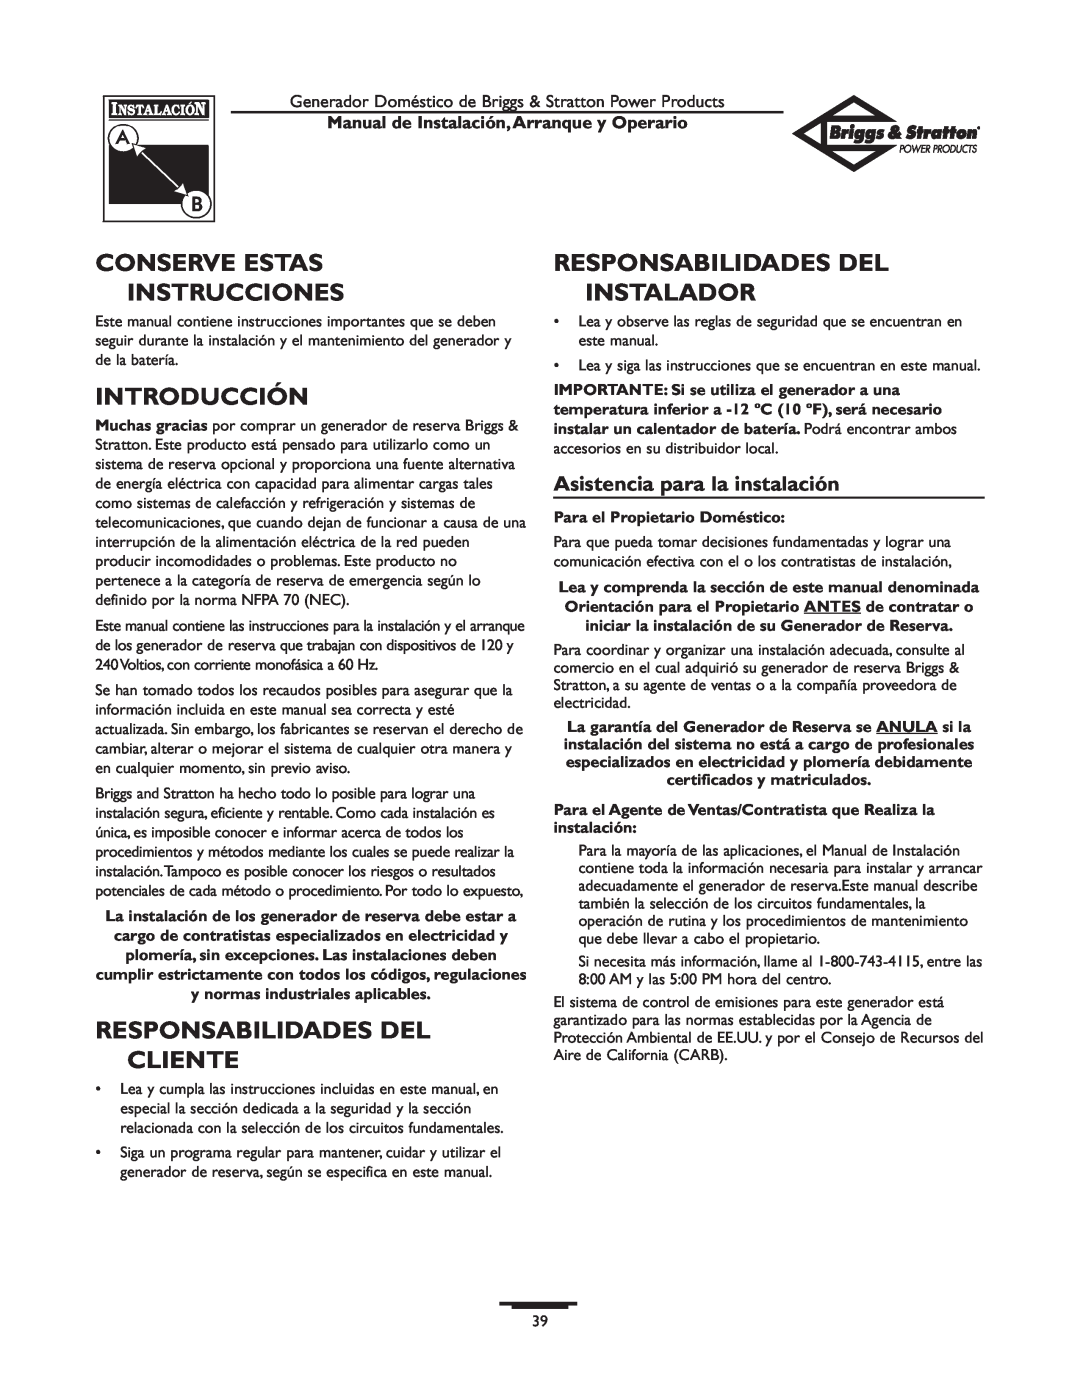 Briggs & Stratton 01897-0 manual Introducción, Responsabilidades Del Cliente, Responsabilidades Del Instalador 